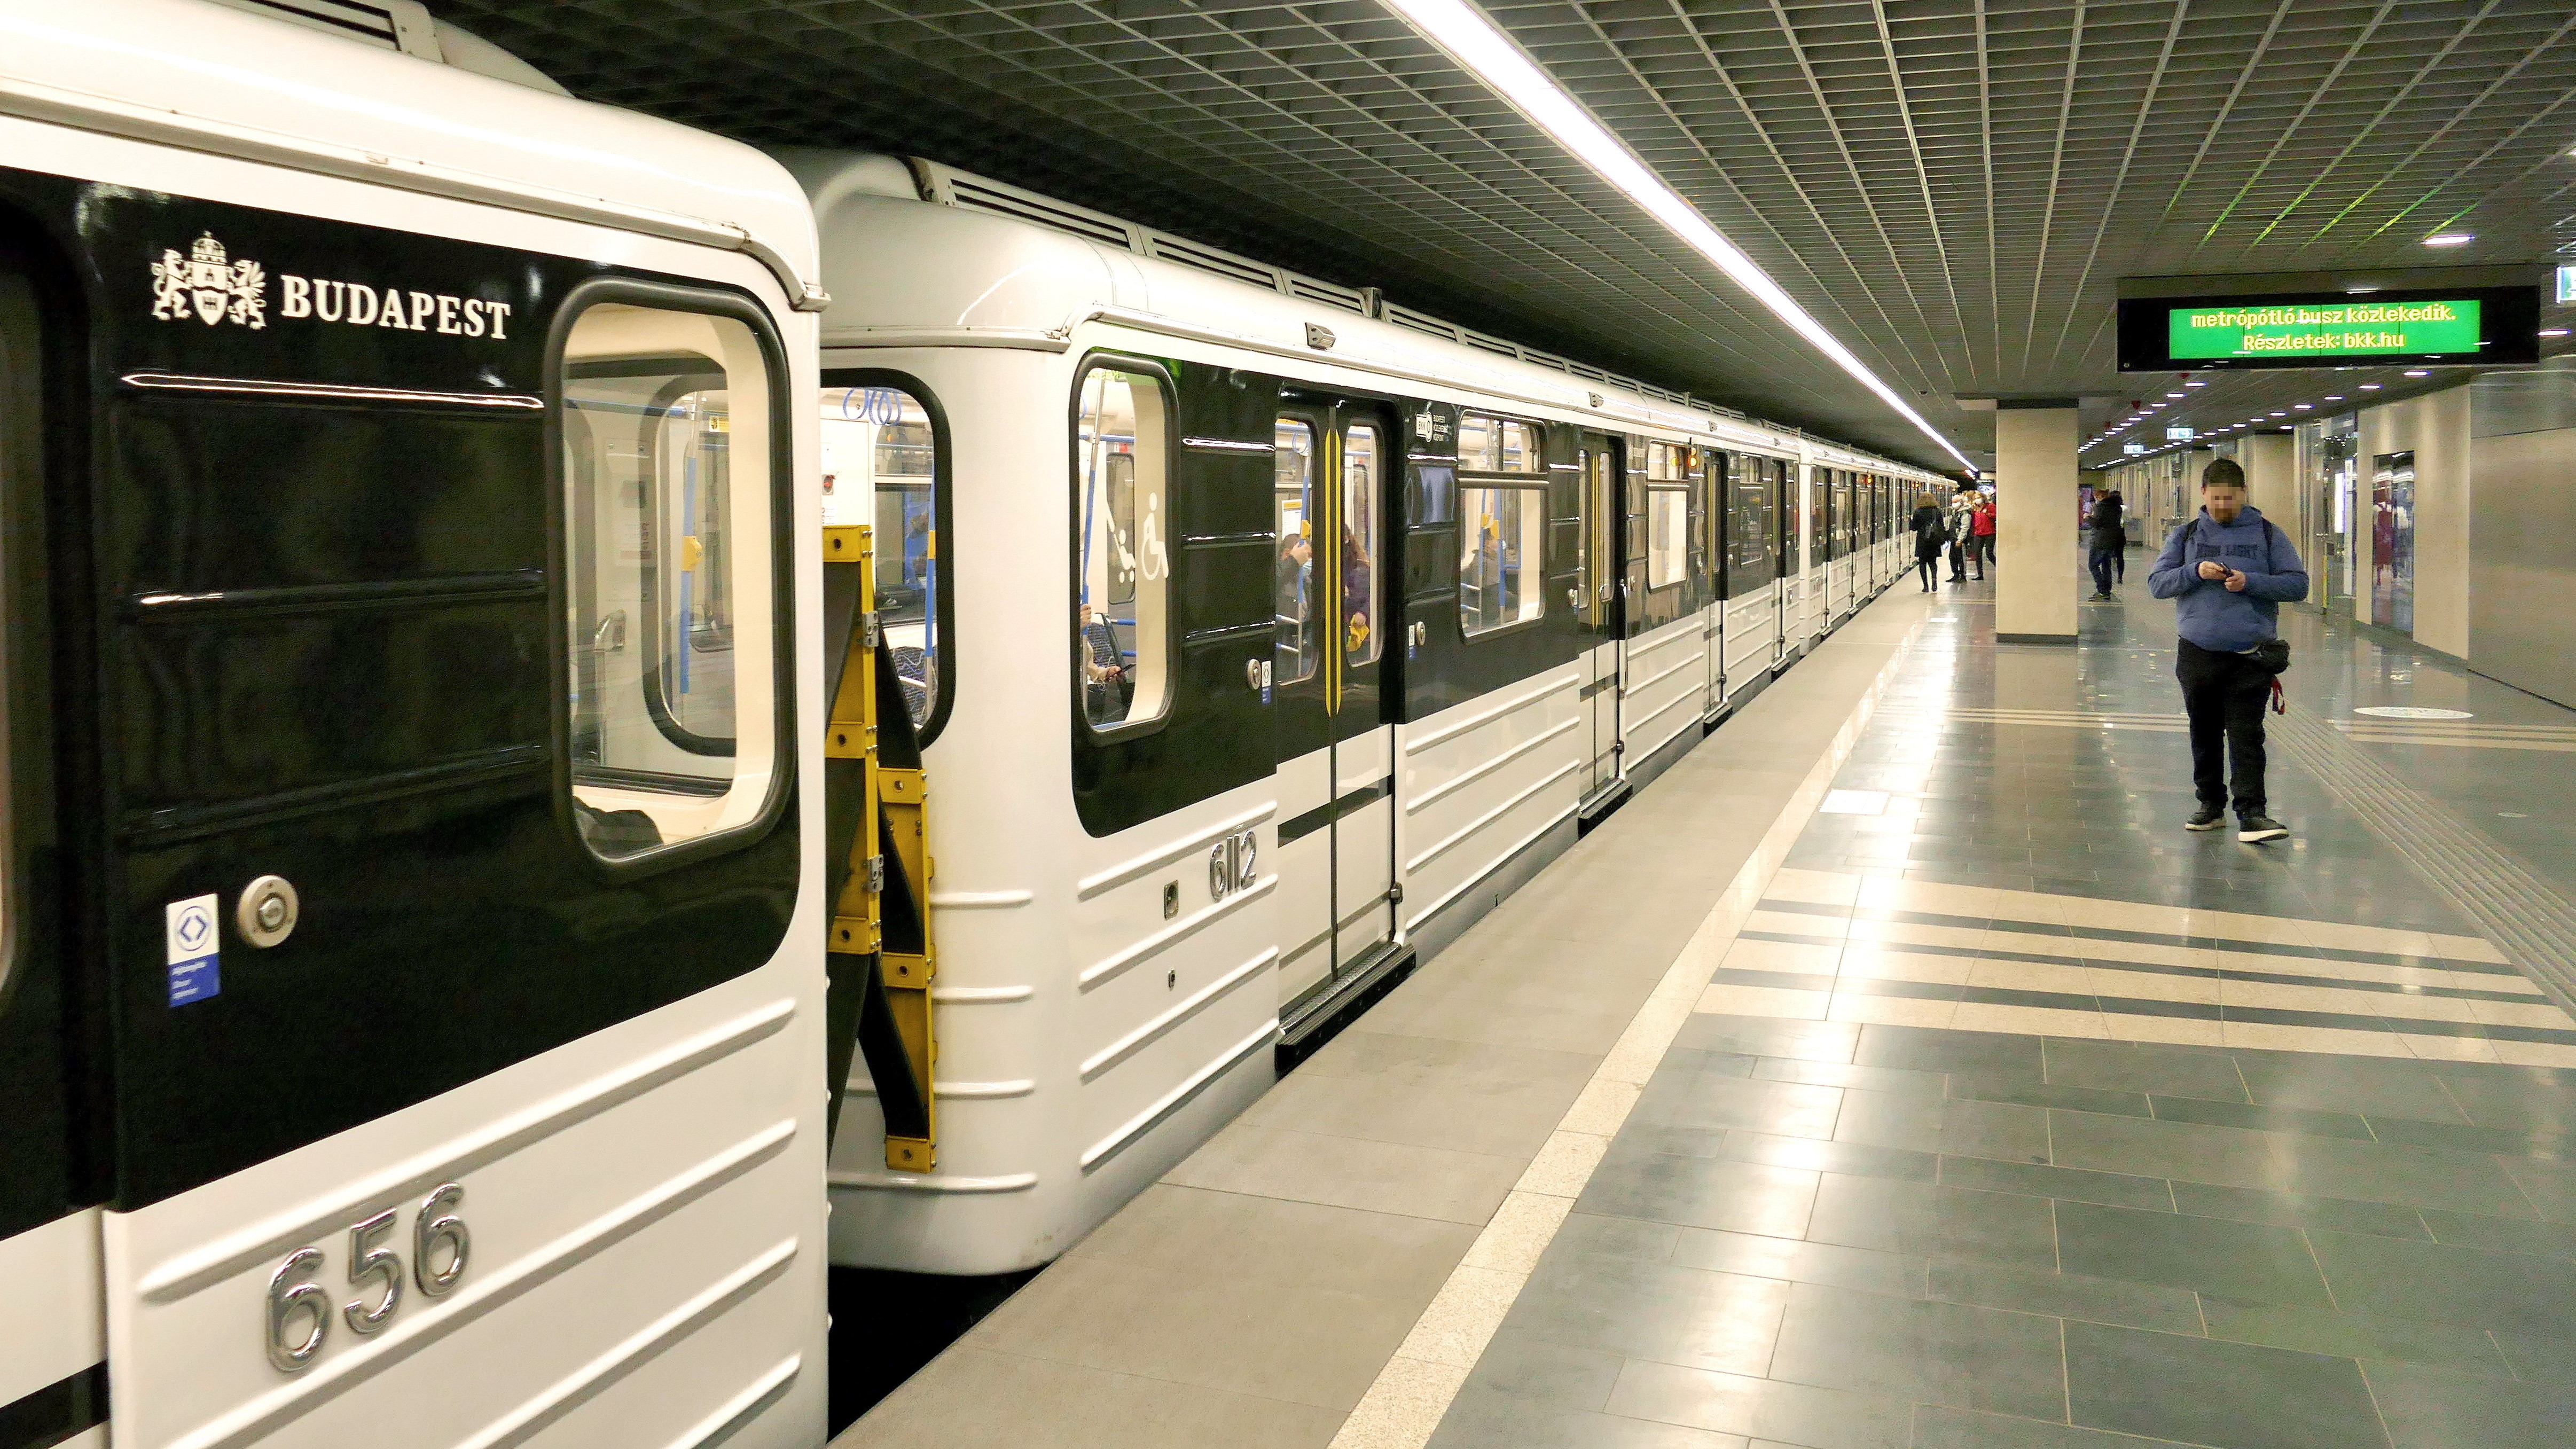 A 3-as metró vonalán közlekedő egyik orosz gyártmányú szerelvény megérkezik a Göncz Árpád térnél lévő megállójába